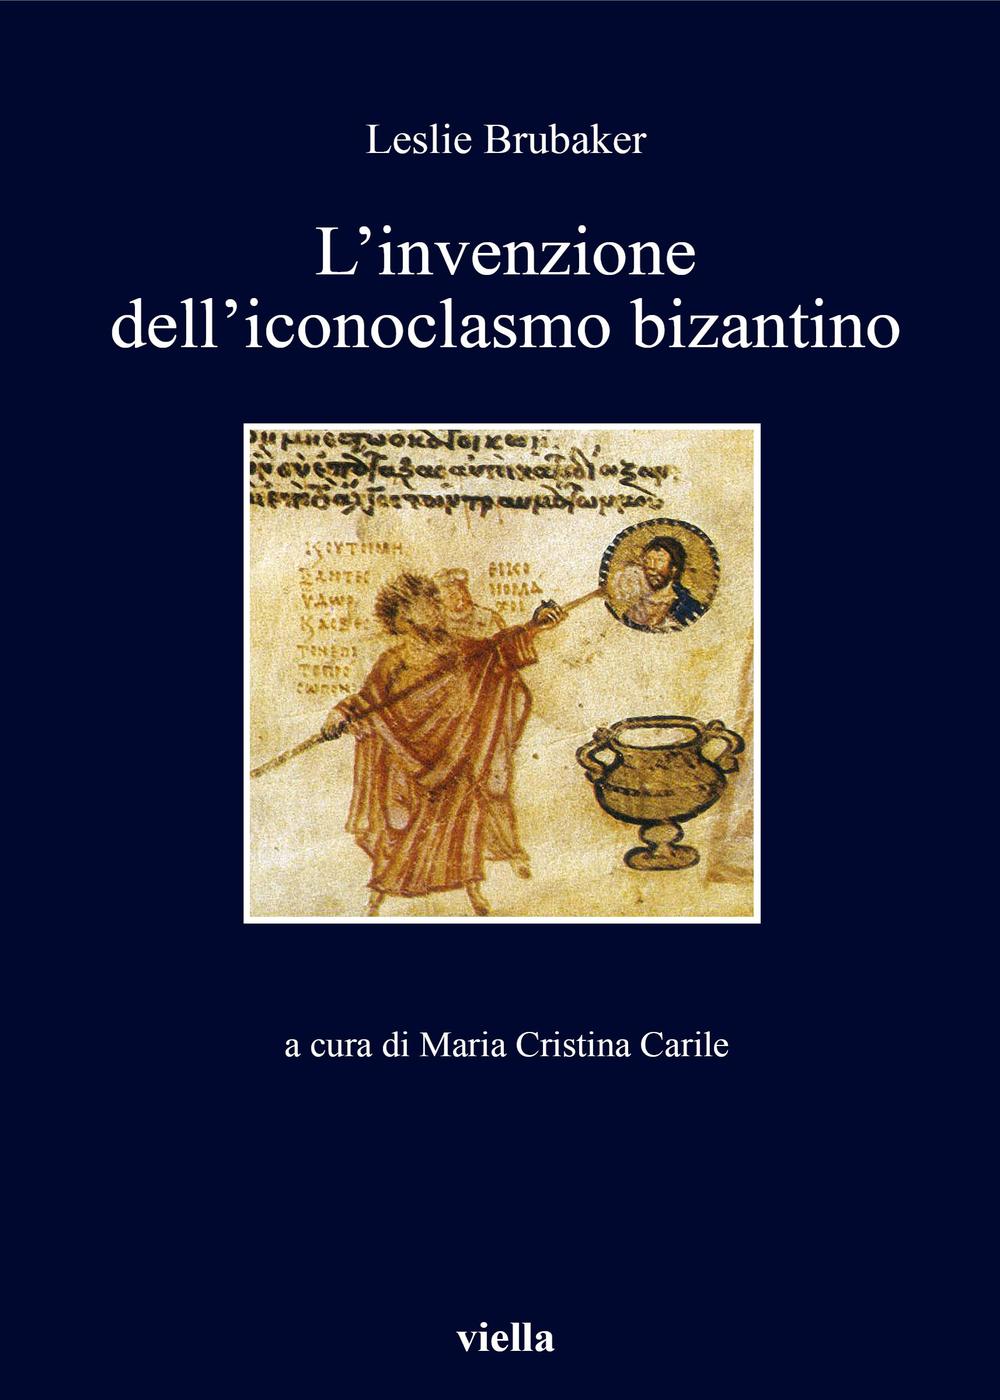 Libri Lesile Brubaker - L' Invenzione Dell'iconoclasmo Bizantino NUOVO SIGILLATO, EDIZIONE DEL 20/10/2016 SUBITO DISPONIBILE